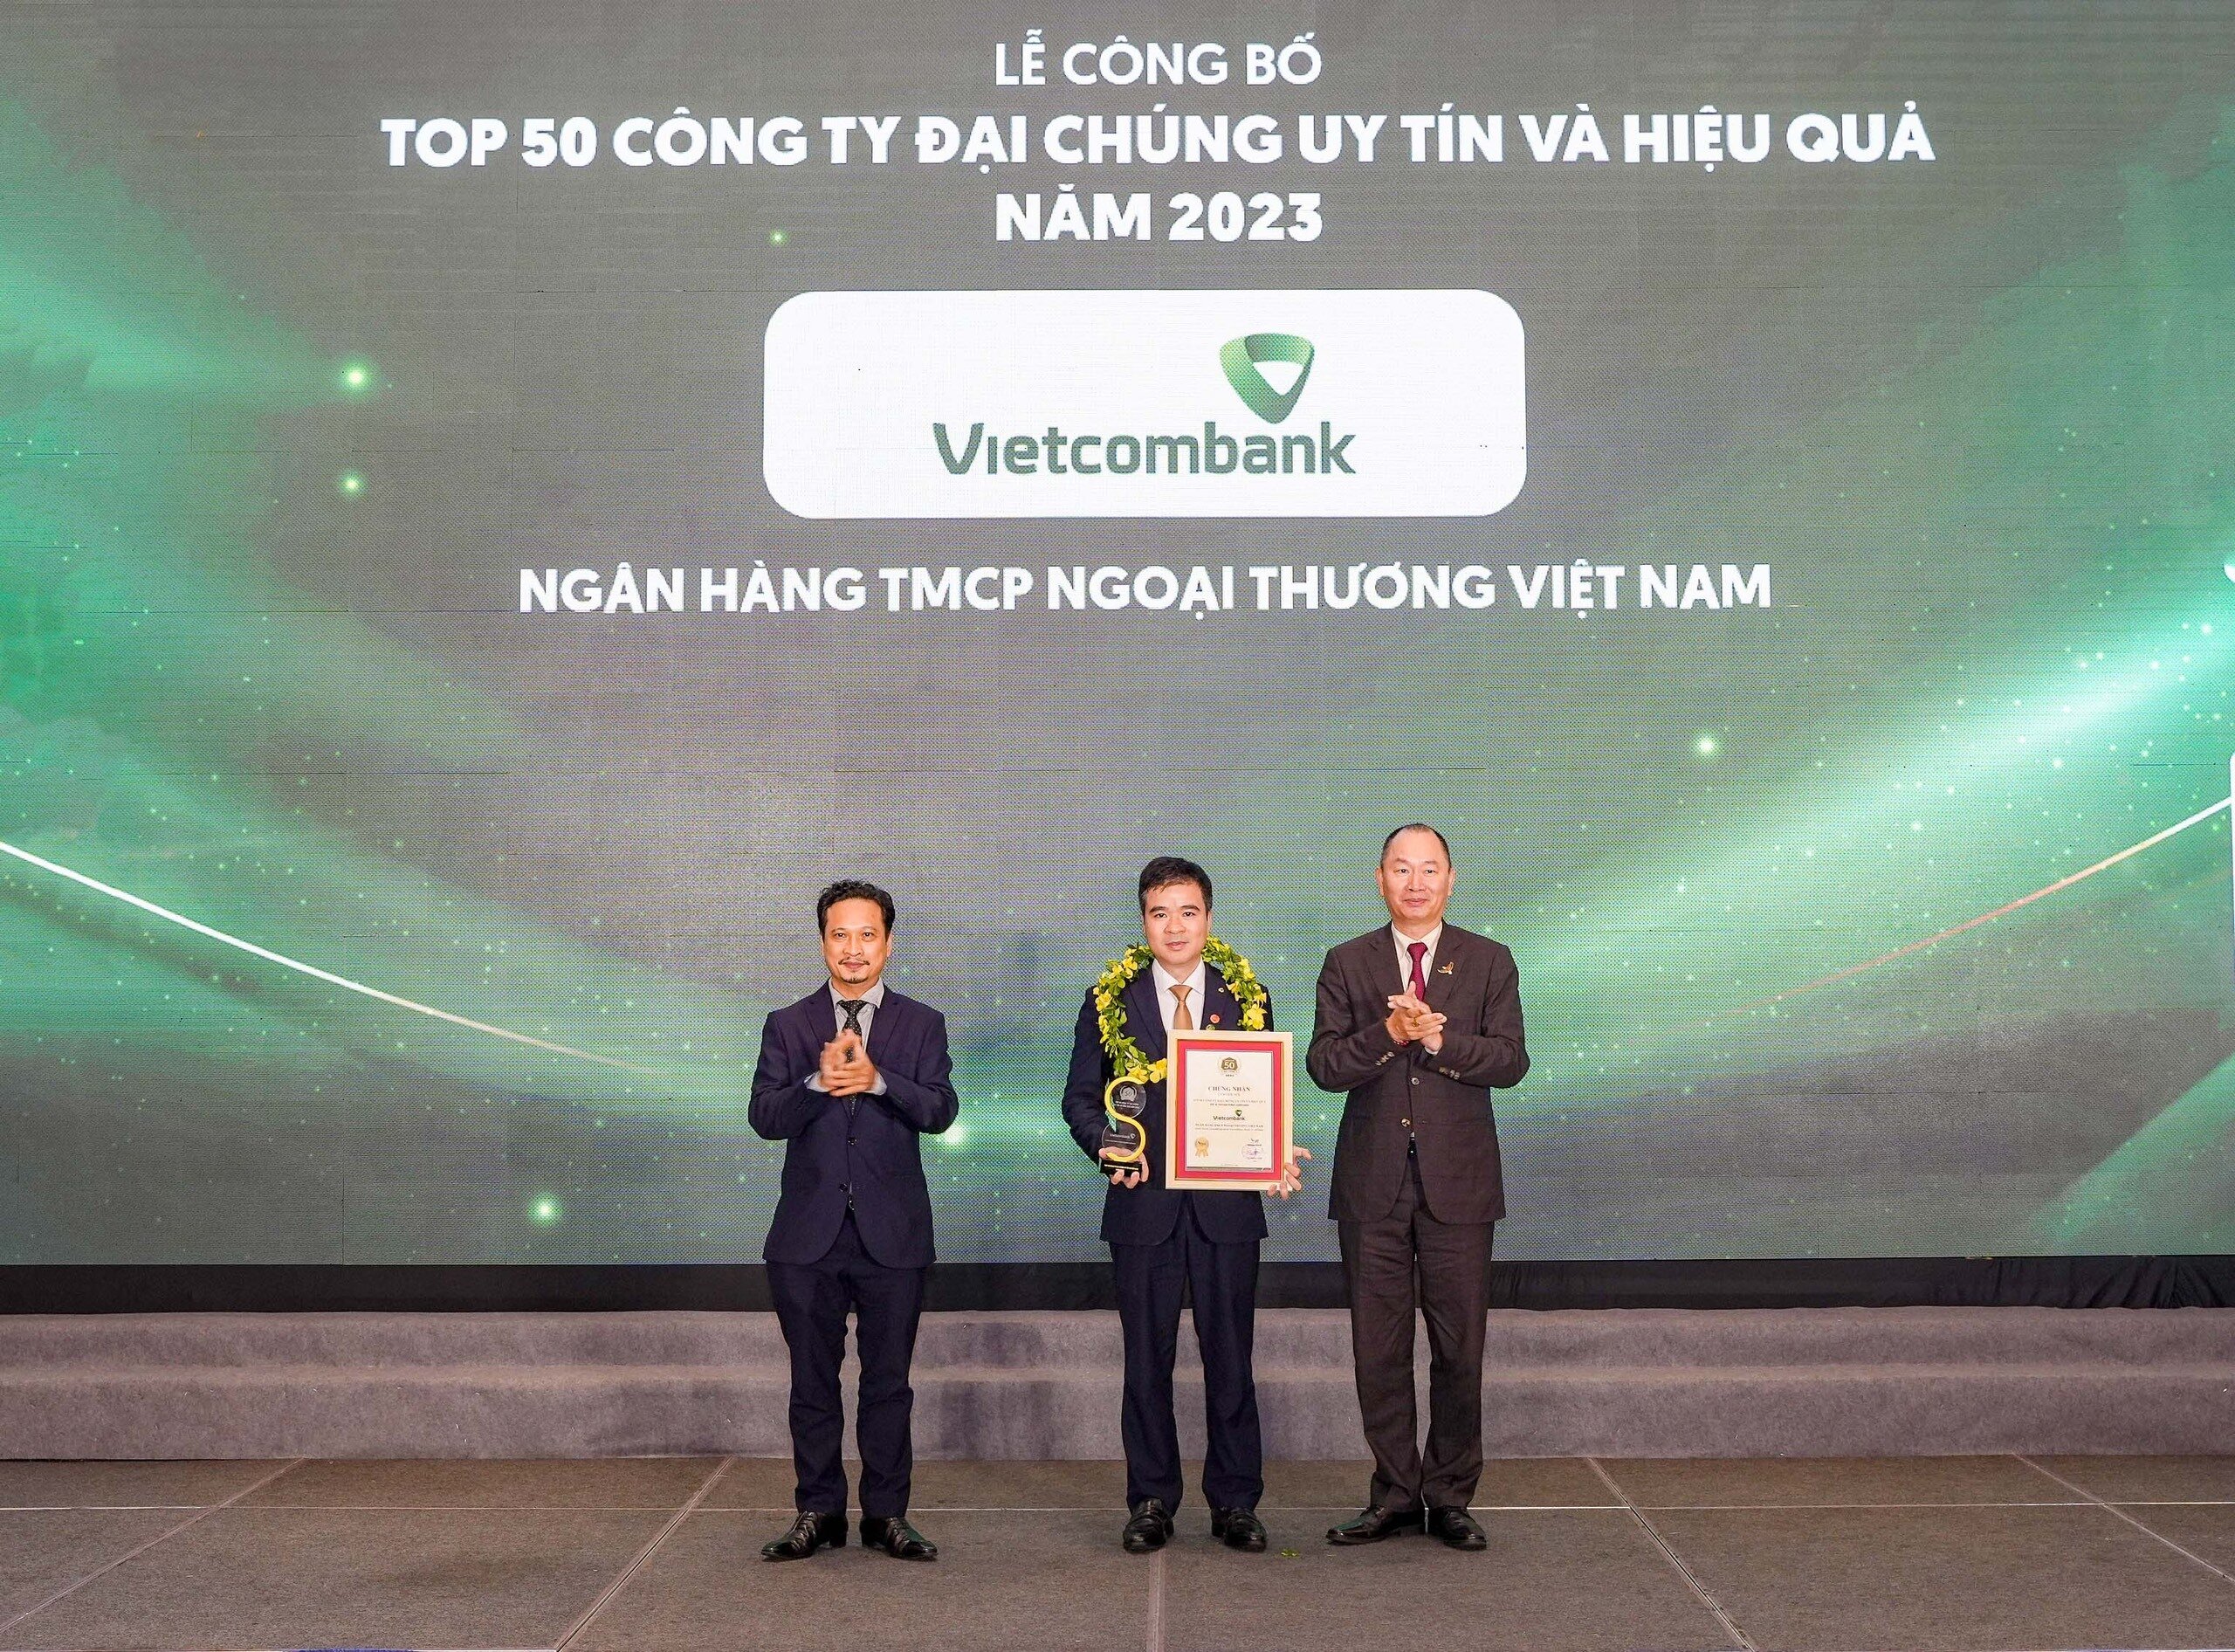 Đại diện Vietcombank (đứng giữa) nhận danh hiệu “Công ty đại chúng uy tín và hiệu quả nhất Việt Nam năm 2023” từ Ban Tổ chức.